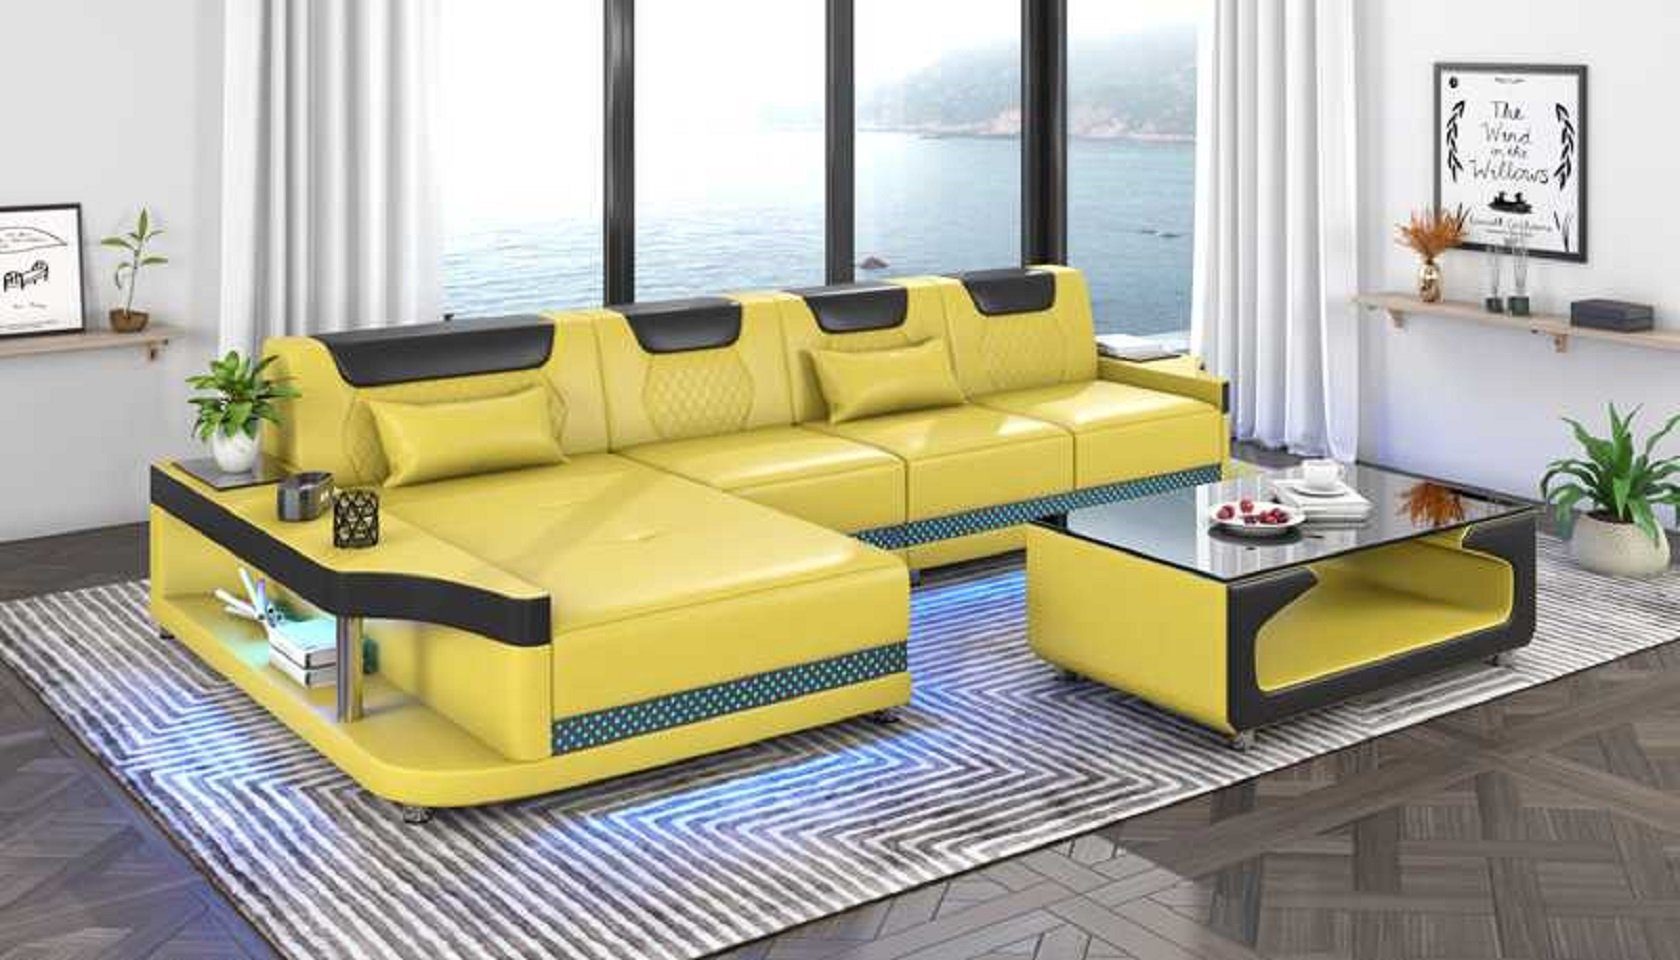 JVmoebel Ecksofa Schicker Ecksofa L Form Couch Sofa Grau Luxus Moderne Couchen, 3 Teile, Made in Europe Gelb